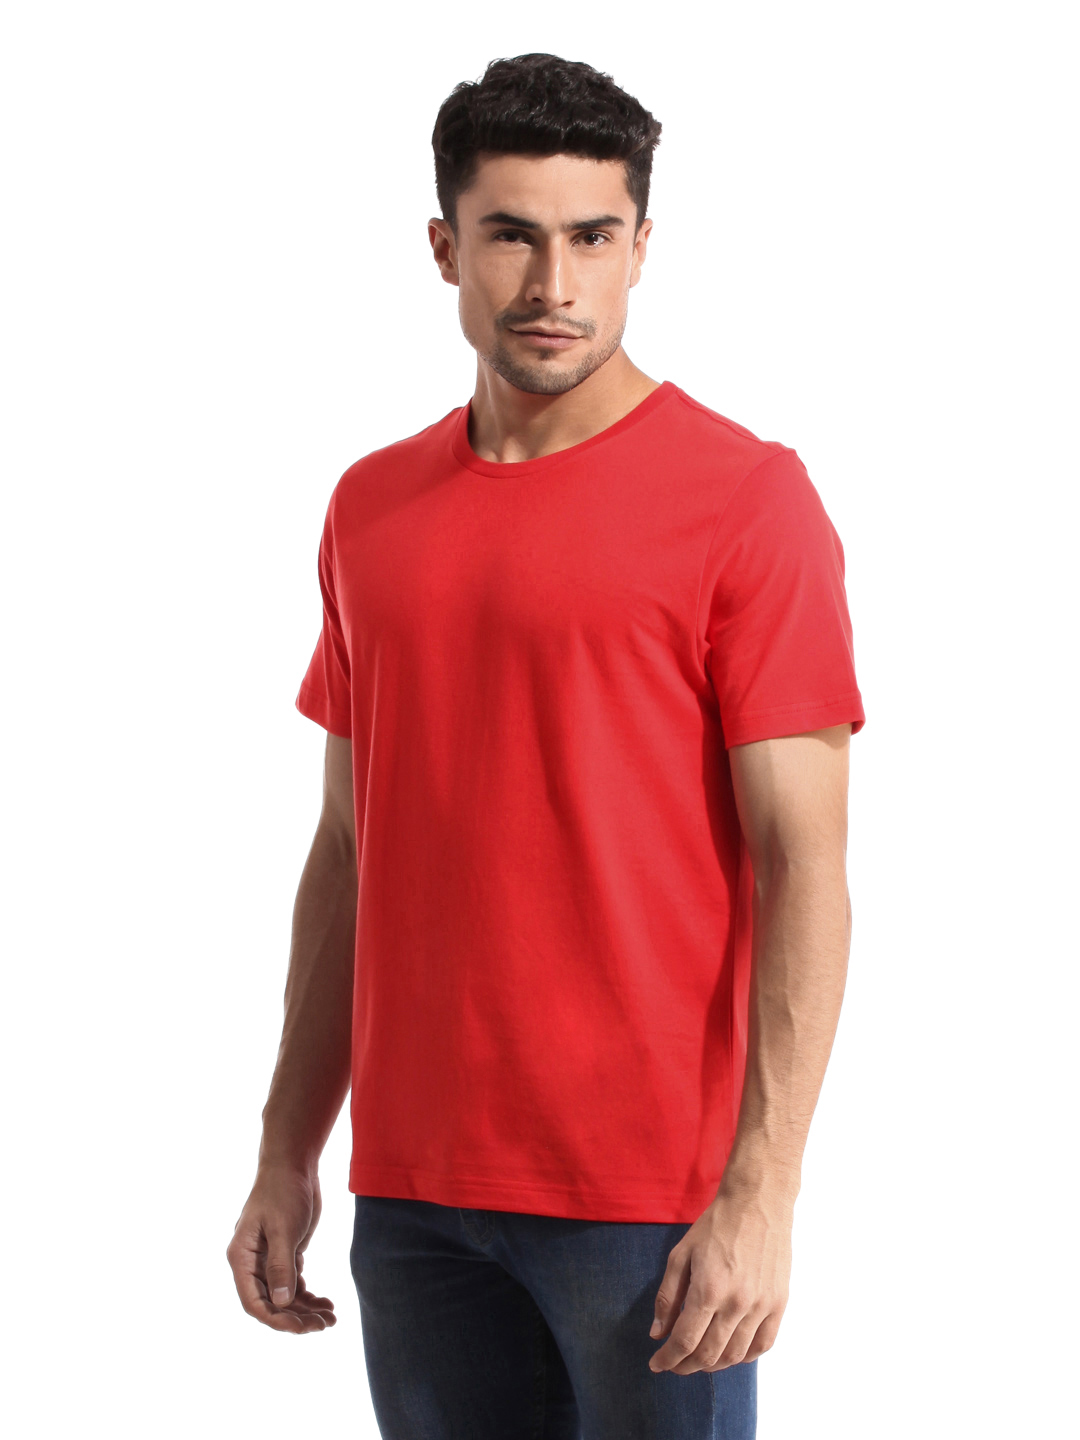 Blank Red Tshirt